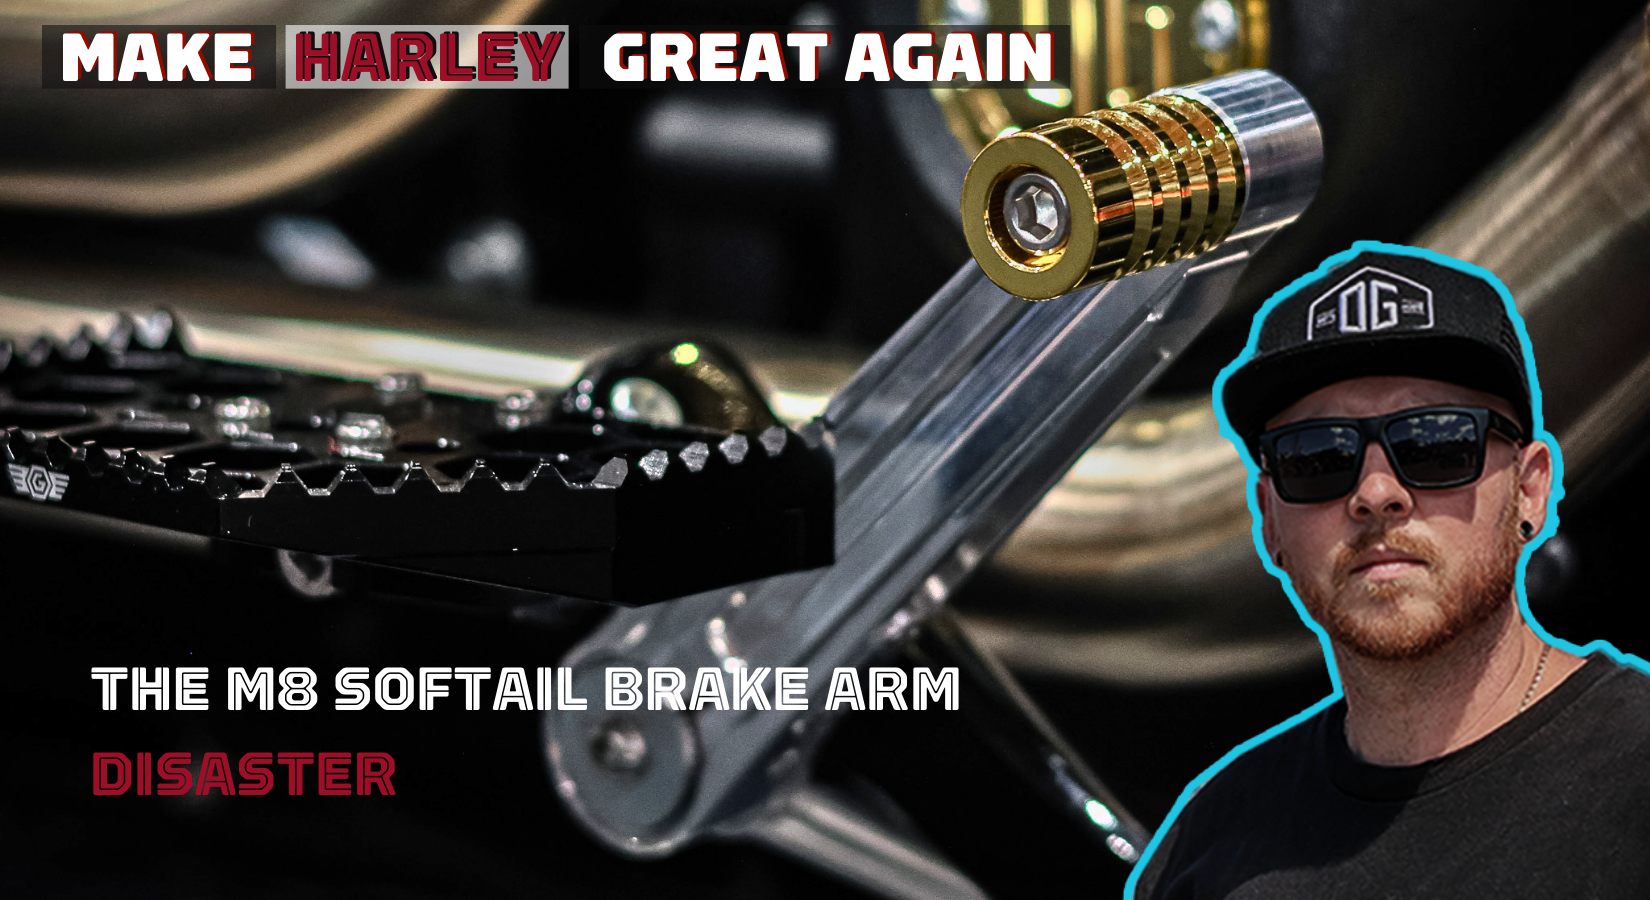 Harley Davidson M8 Softail Brake Arm